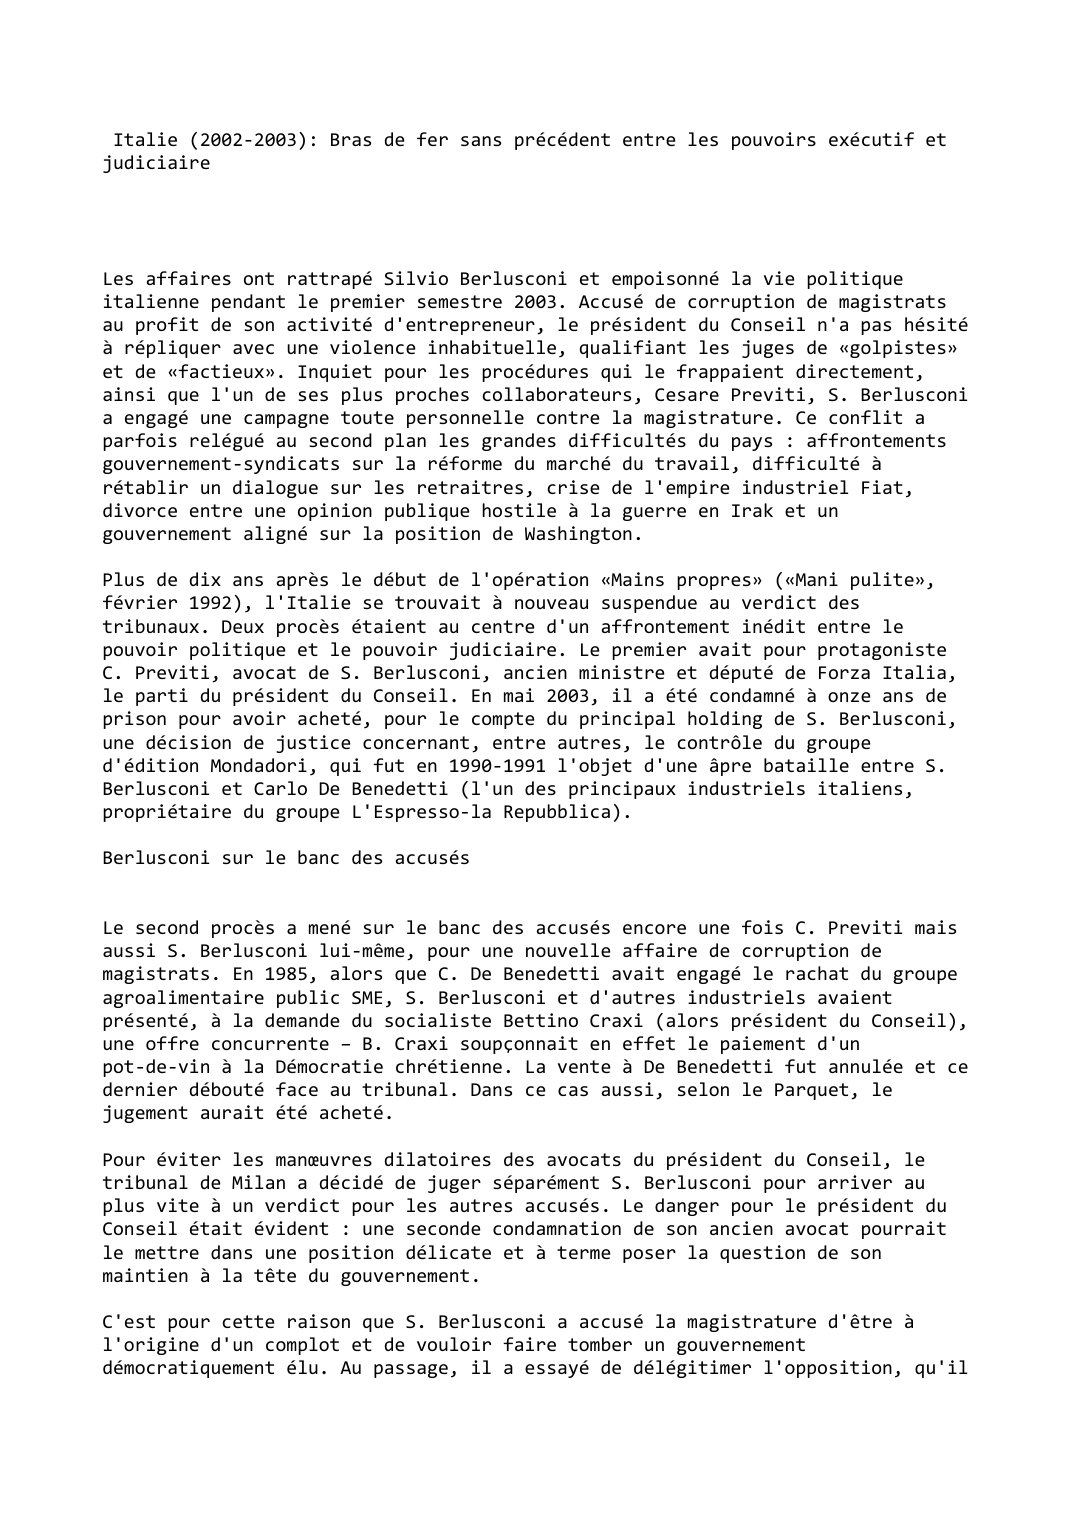 Prévisualisation du document Italie (2002-2003): Bras de fer sans précédent entre les pouvoirs exécutif et judiciaire